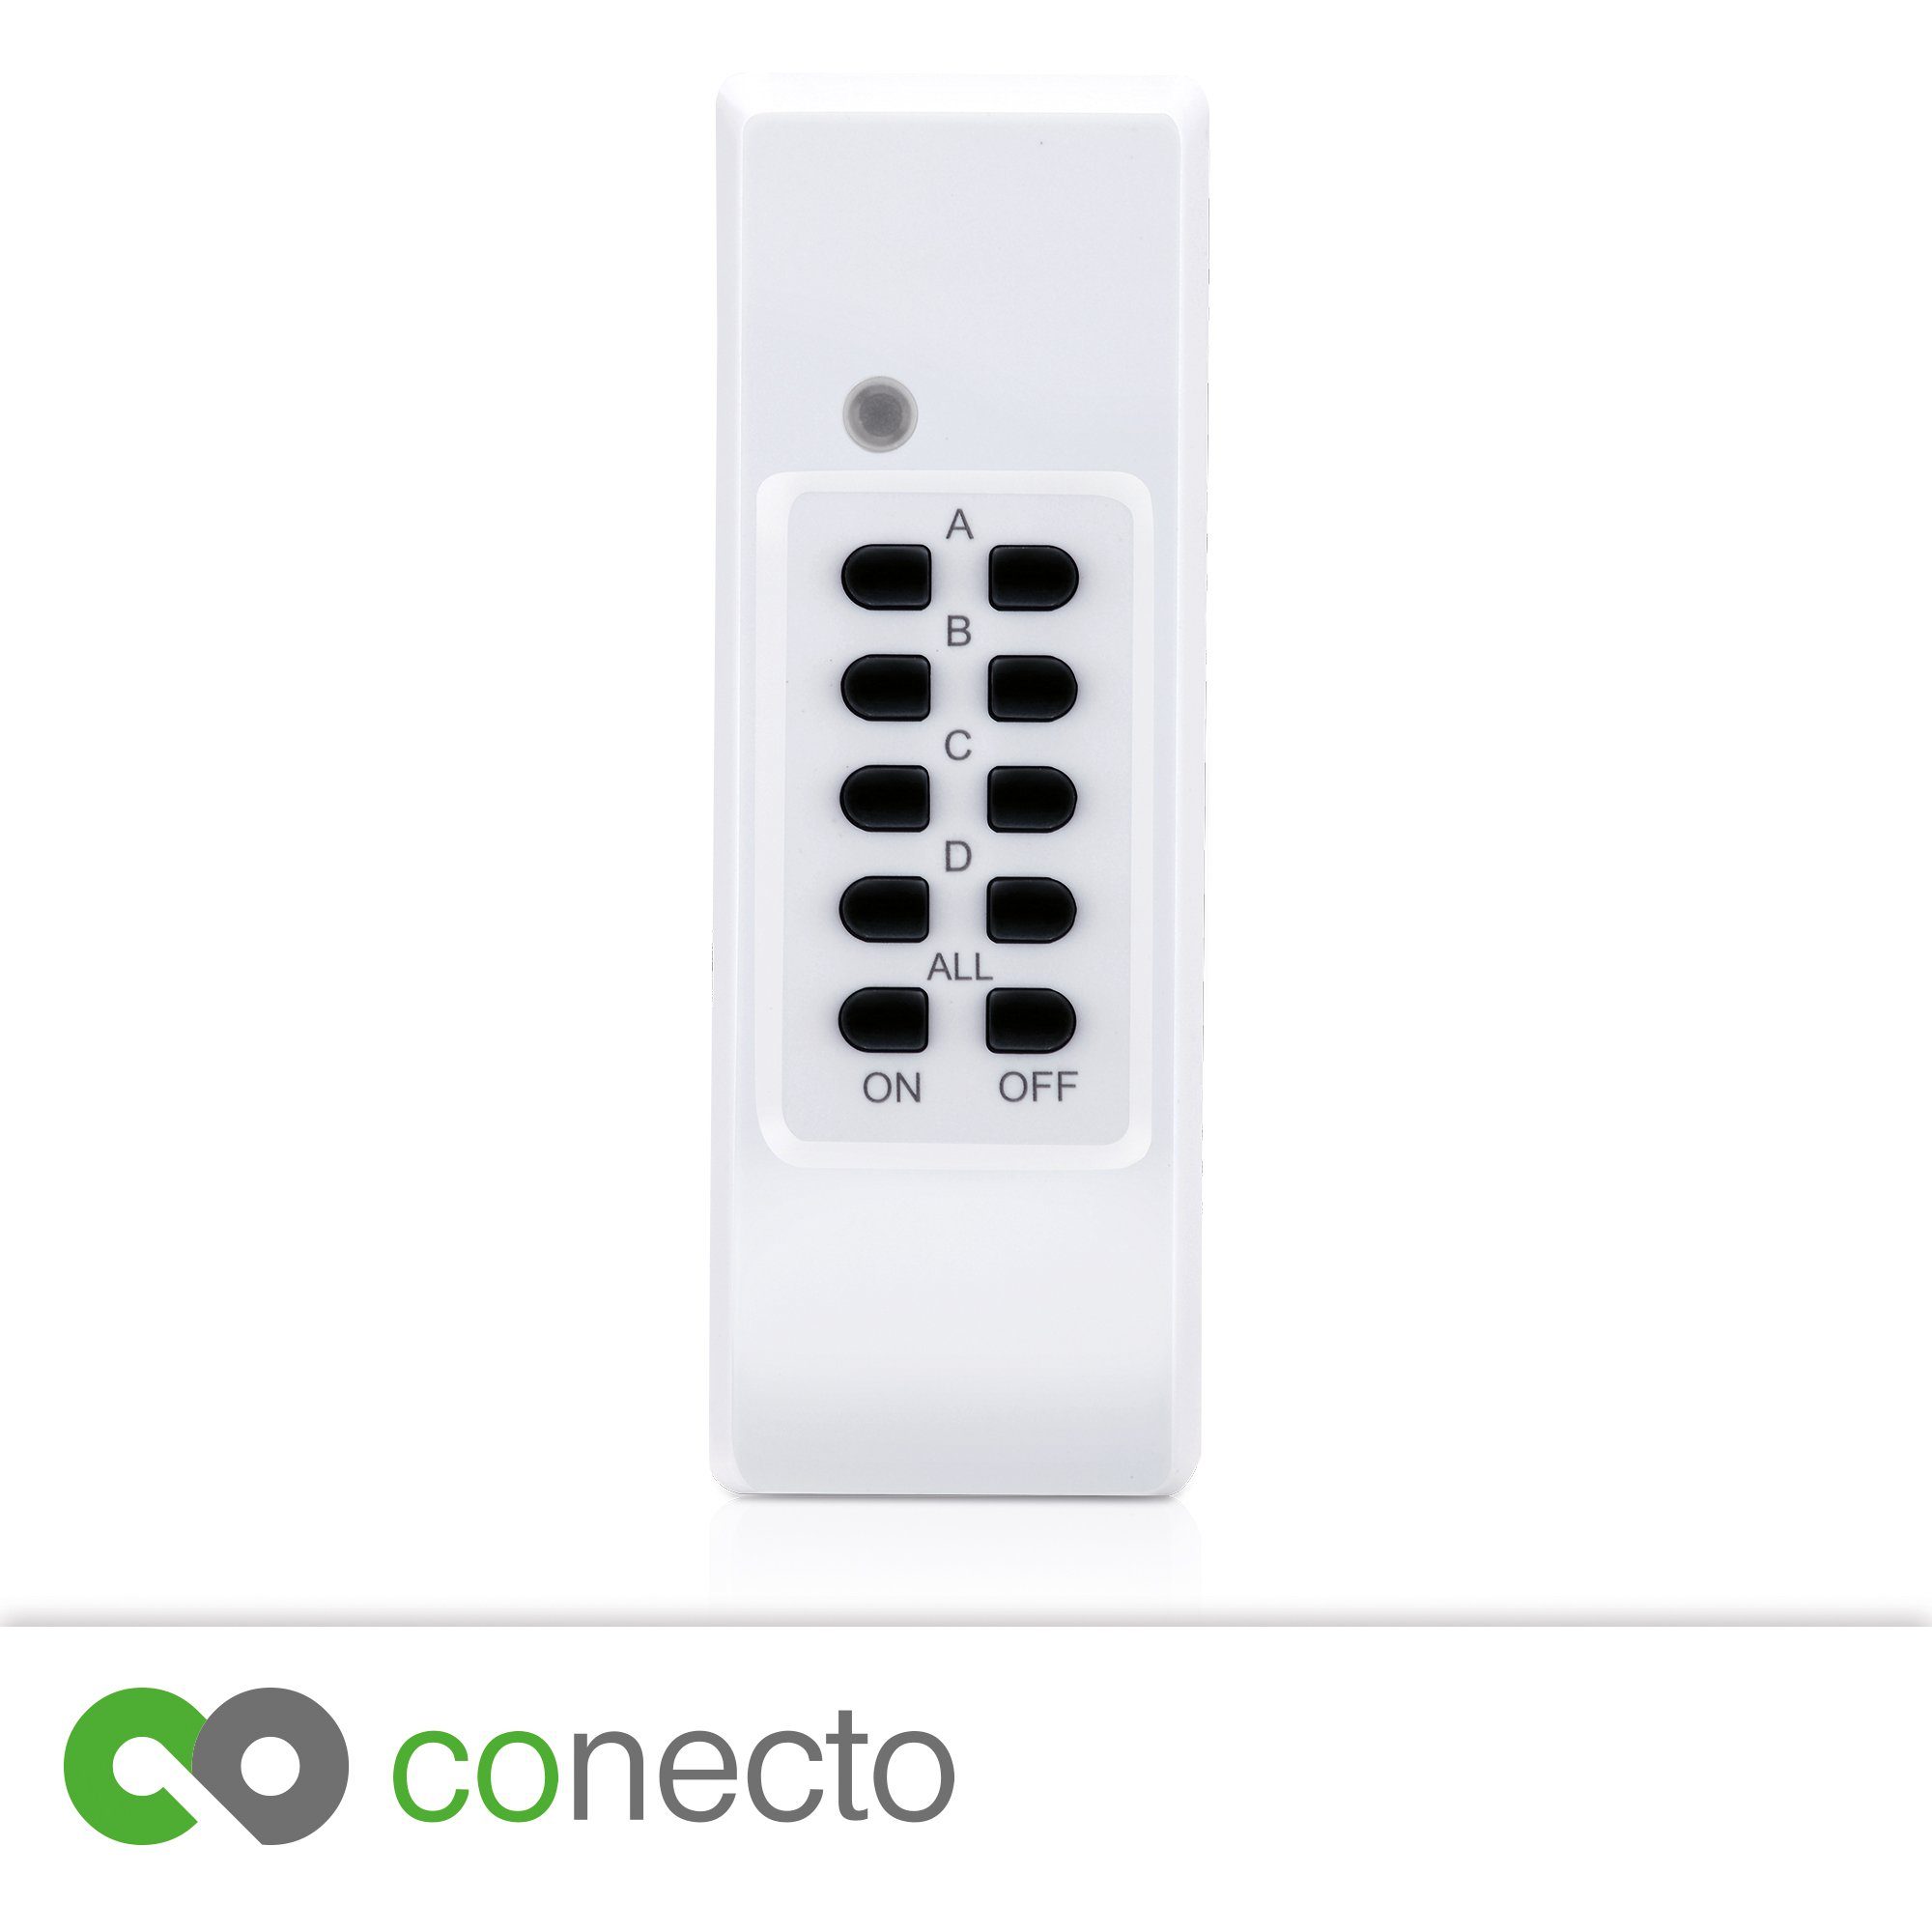 Starterkit conecto Außenbereich für Funksteckdose IP44 Funksteckdosen Set Komplett conecto